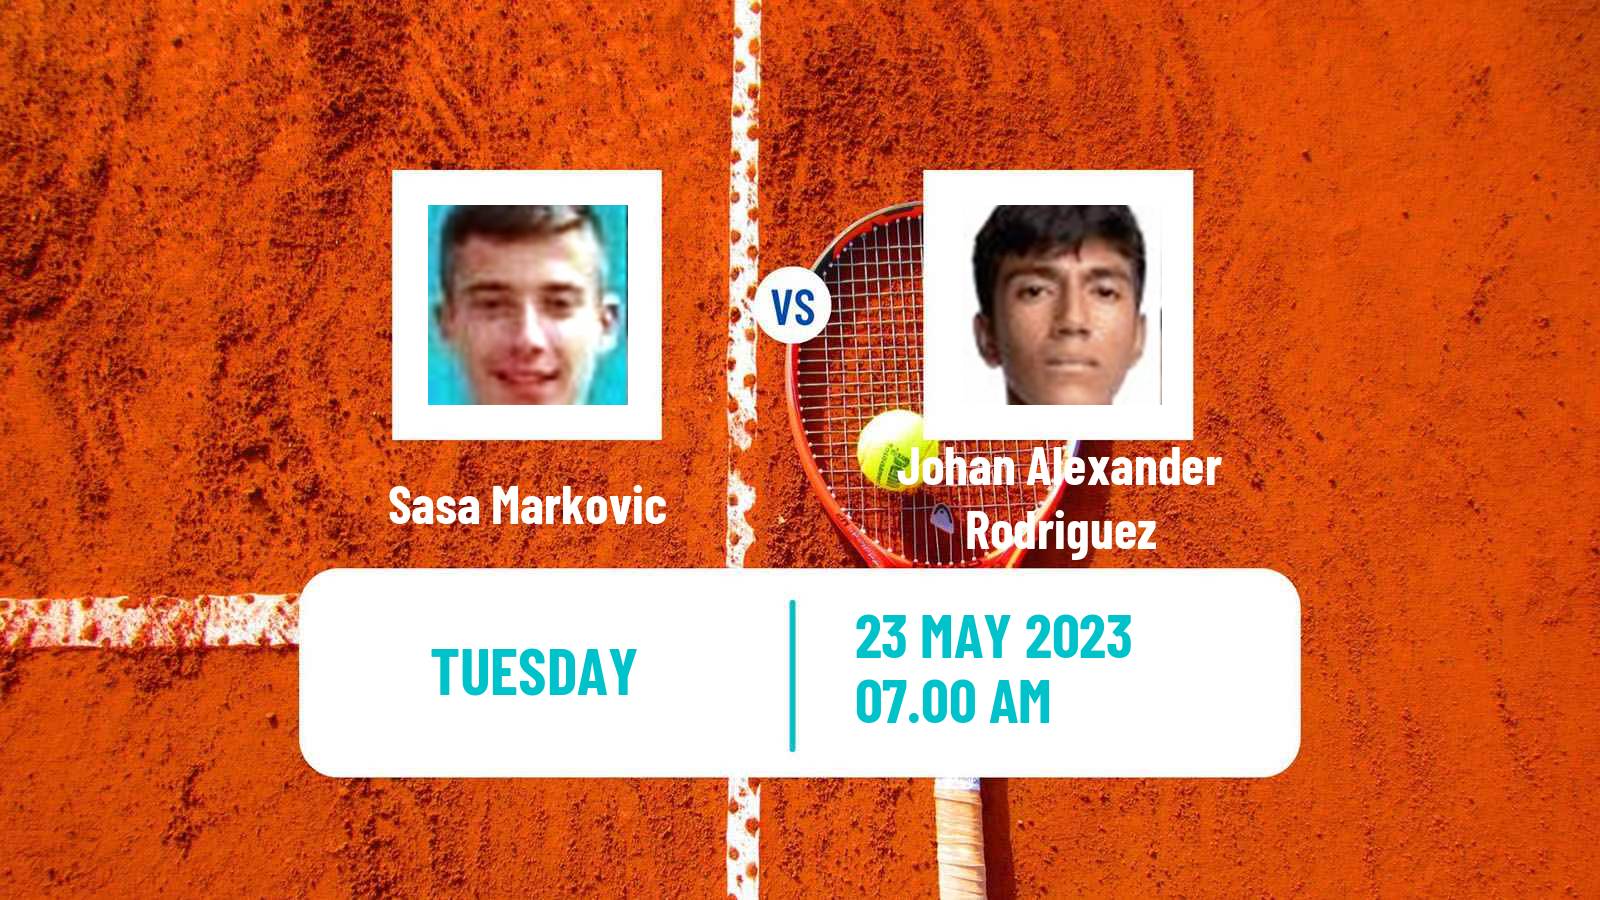 Tennis ITF M15 Kursumlijska Banja 3 Men Sasa Markovic - Johan Alexander Rodriguez